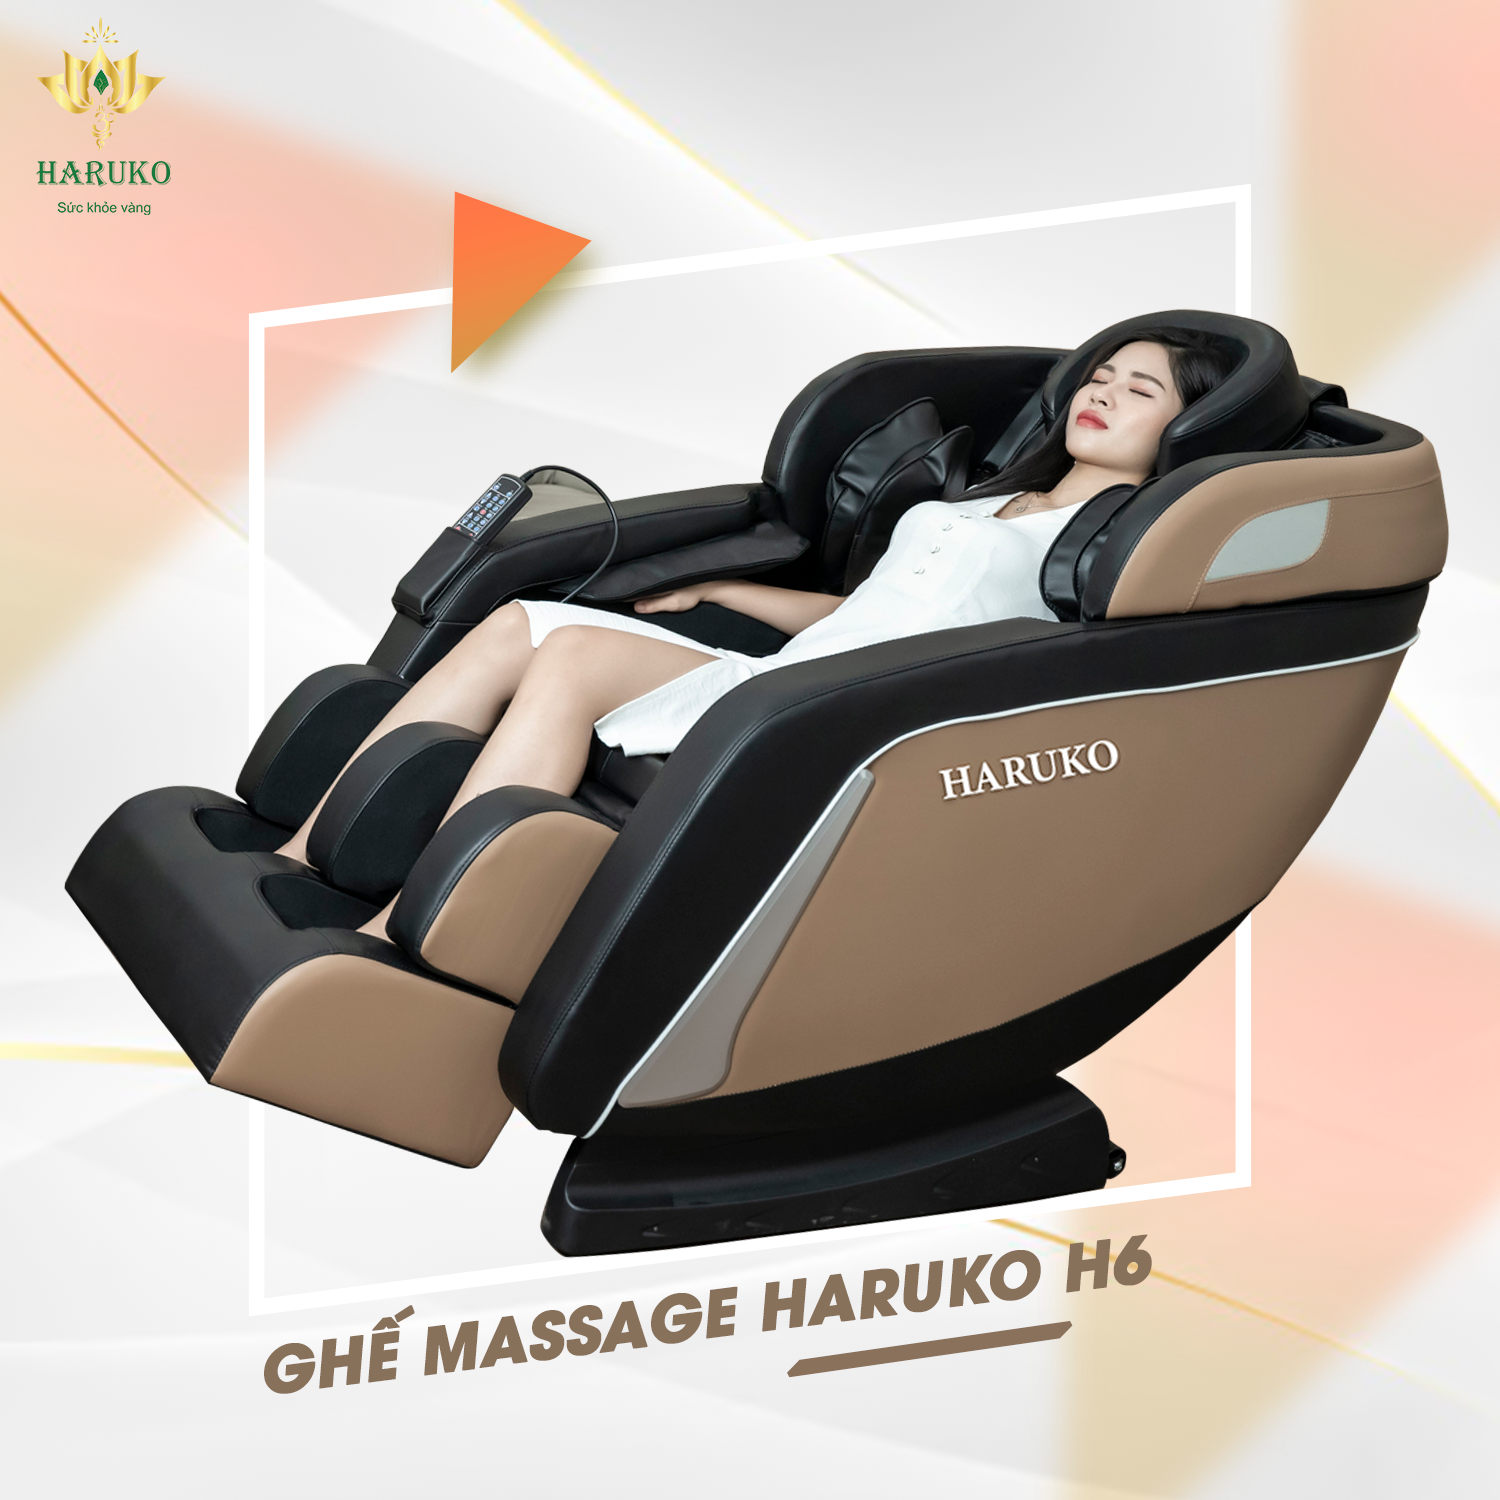 Ghế massage Haruko-H6 với thiết kế đem tới cảm giác thoải mái và chắc chắn cho người sử dụng